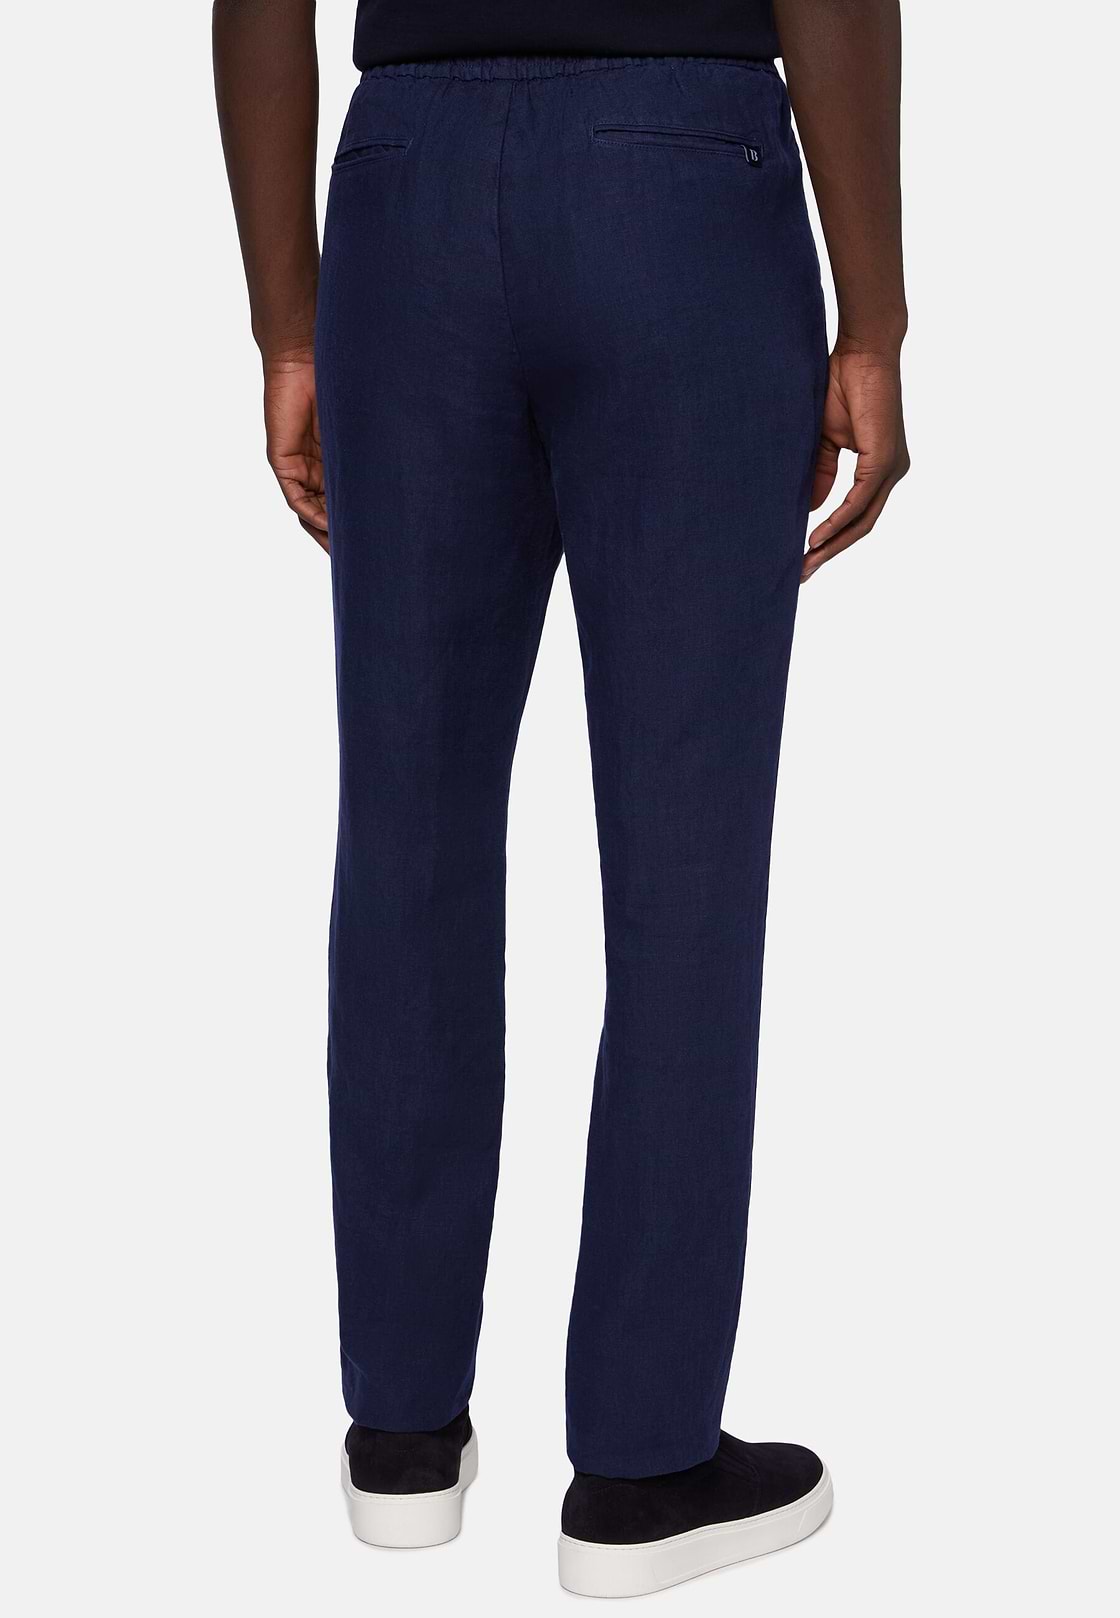 City Linen Pants, Navy blue, hi-res